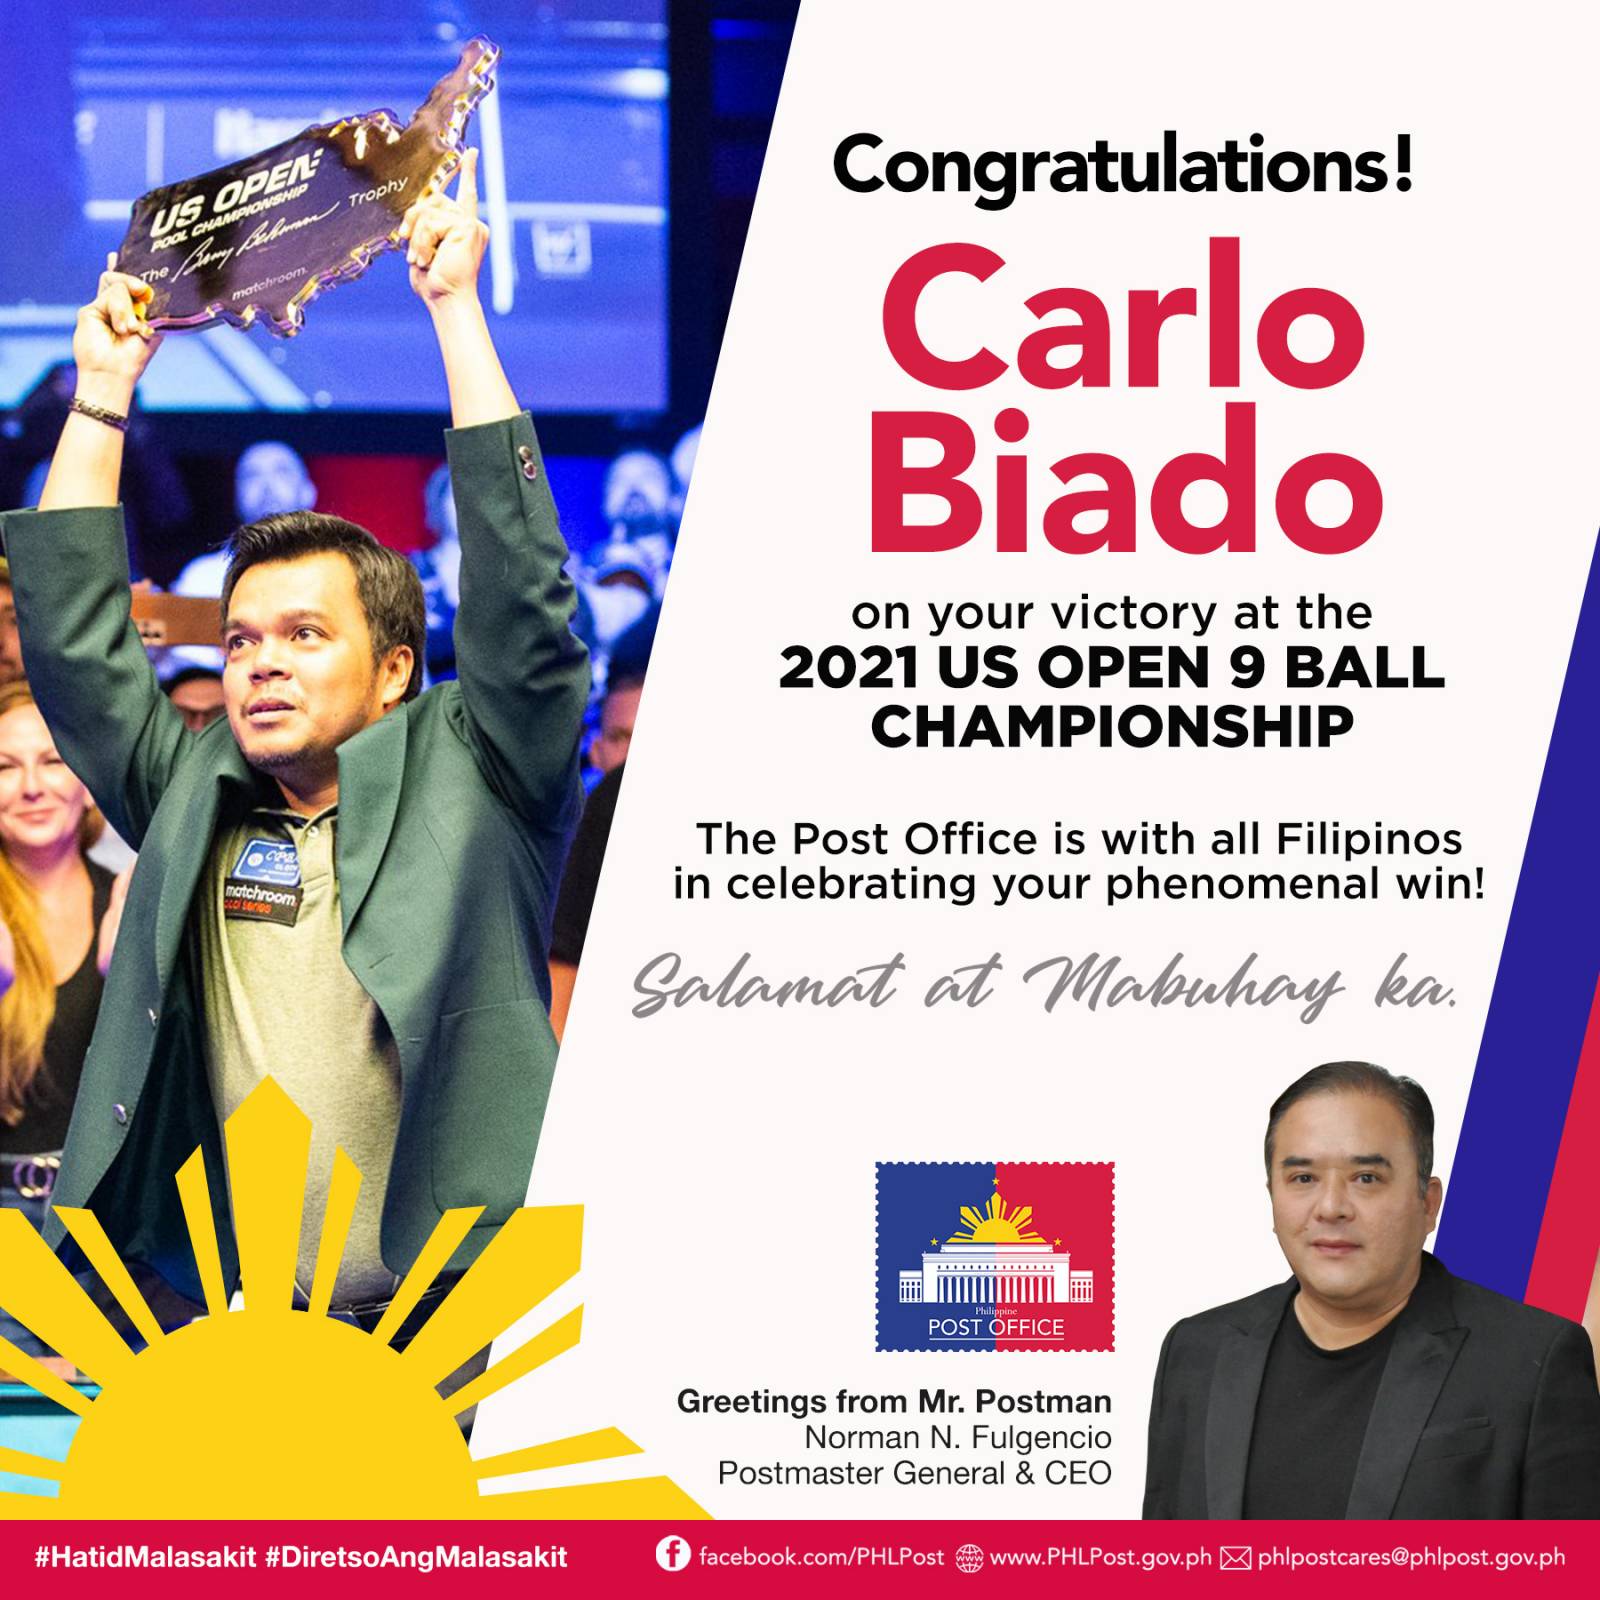 Congratulations Carlo Biado